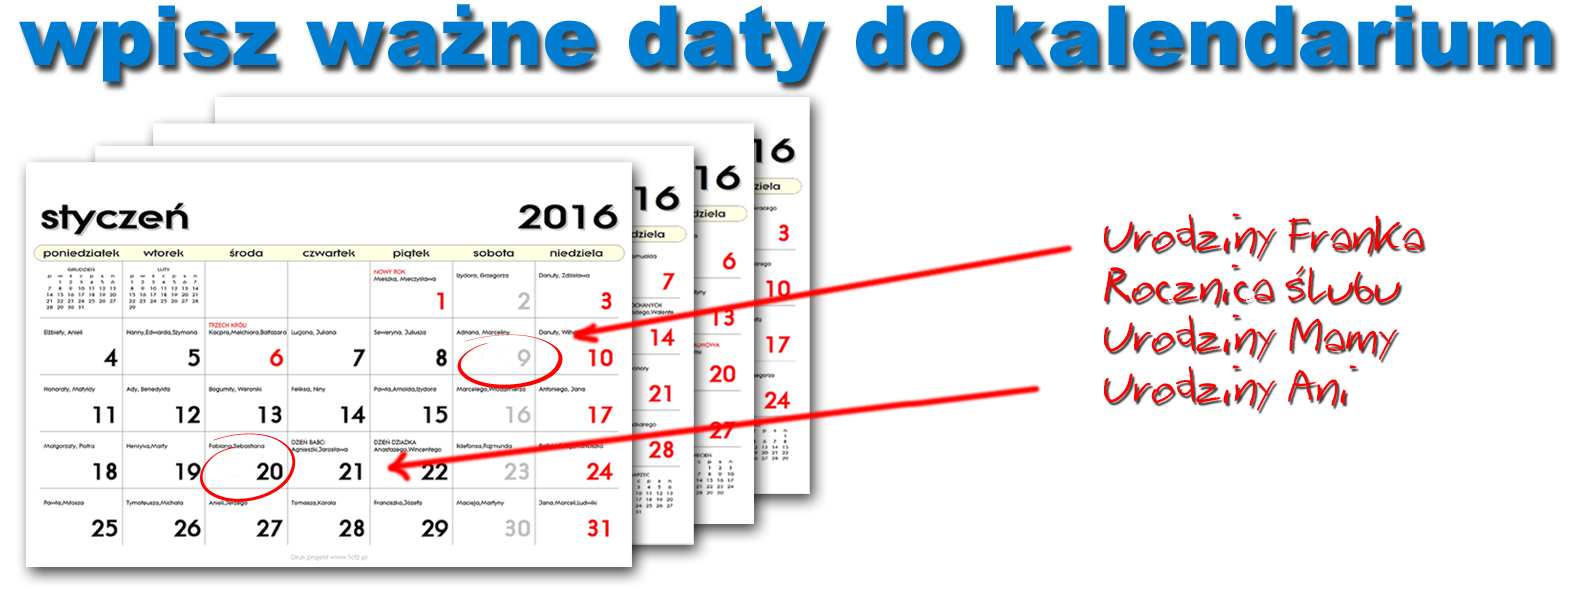 wpisz ważne daty do kalendarza